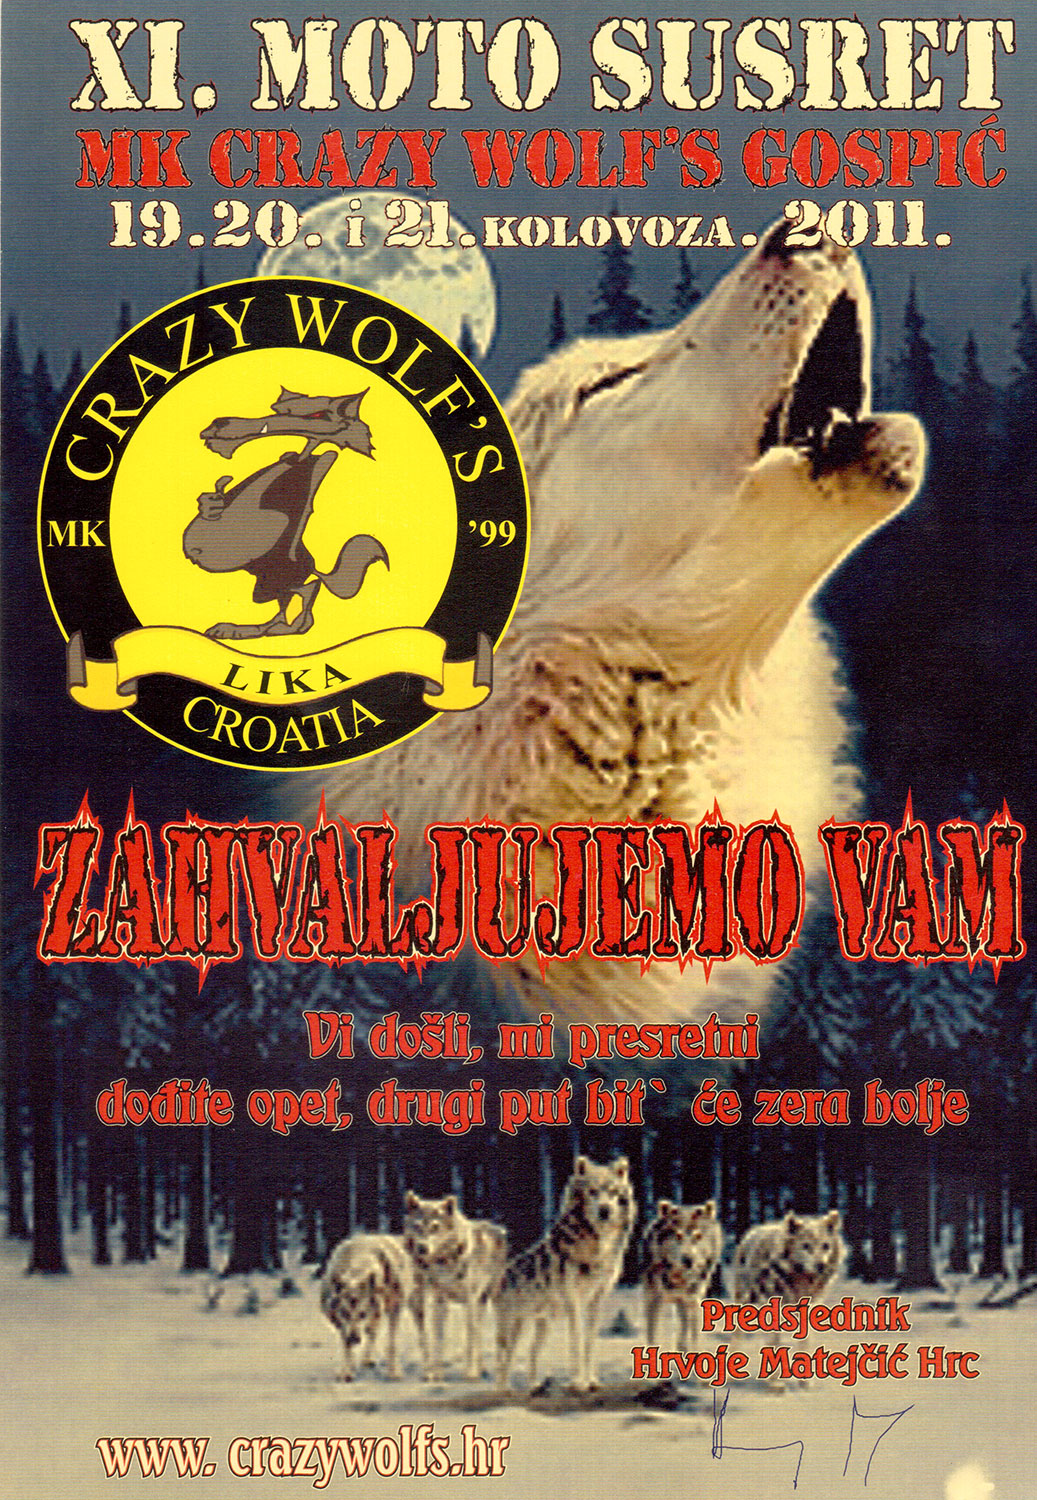 2011 08 19 mk crazy wolfs gospic